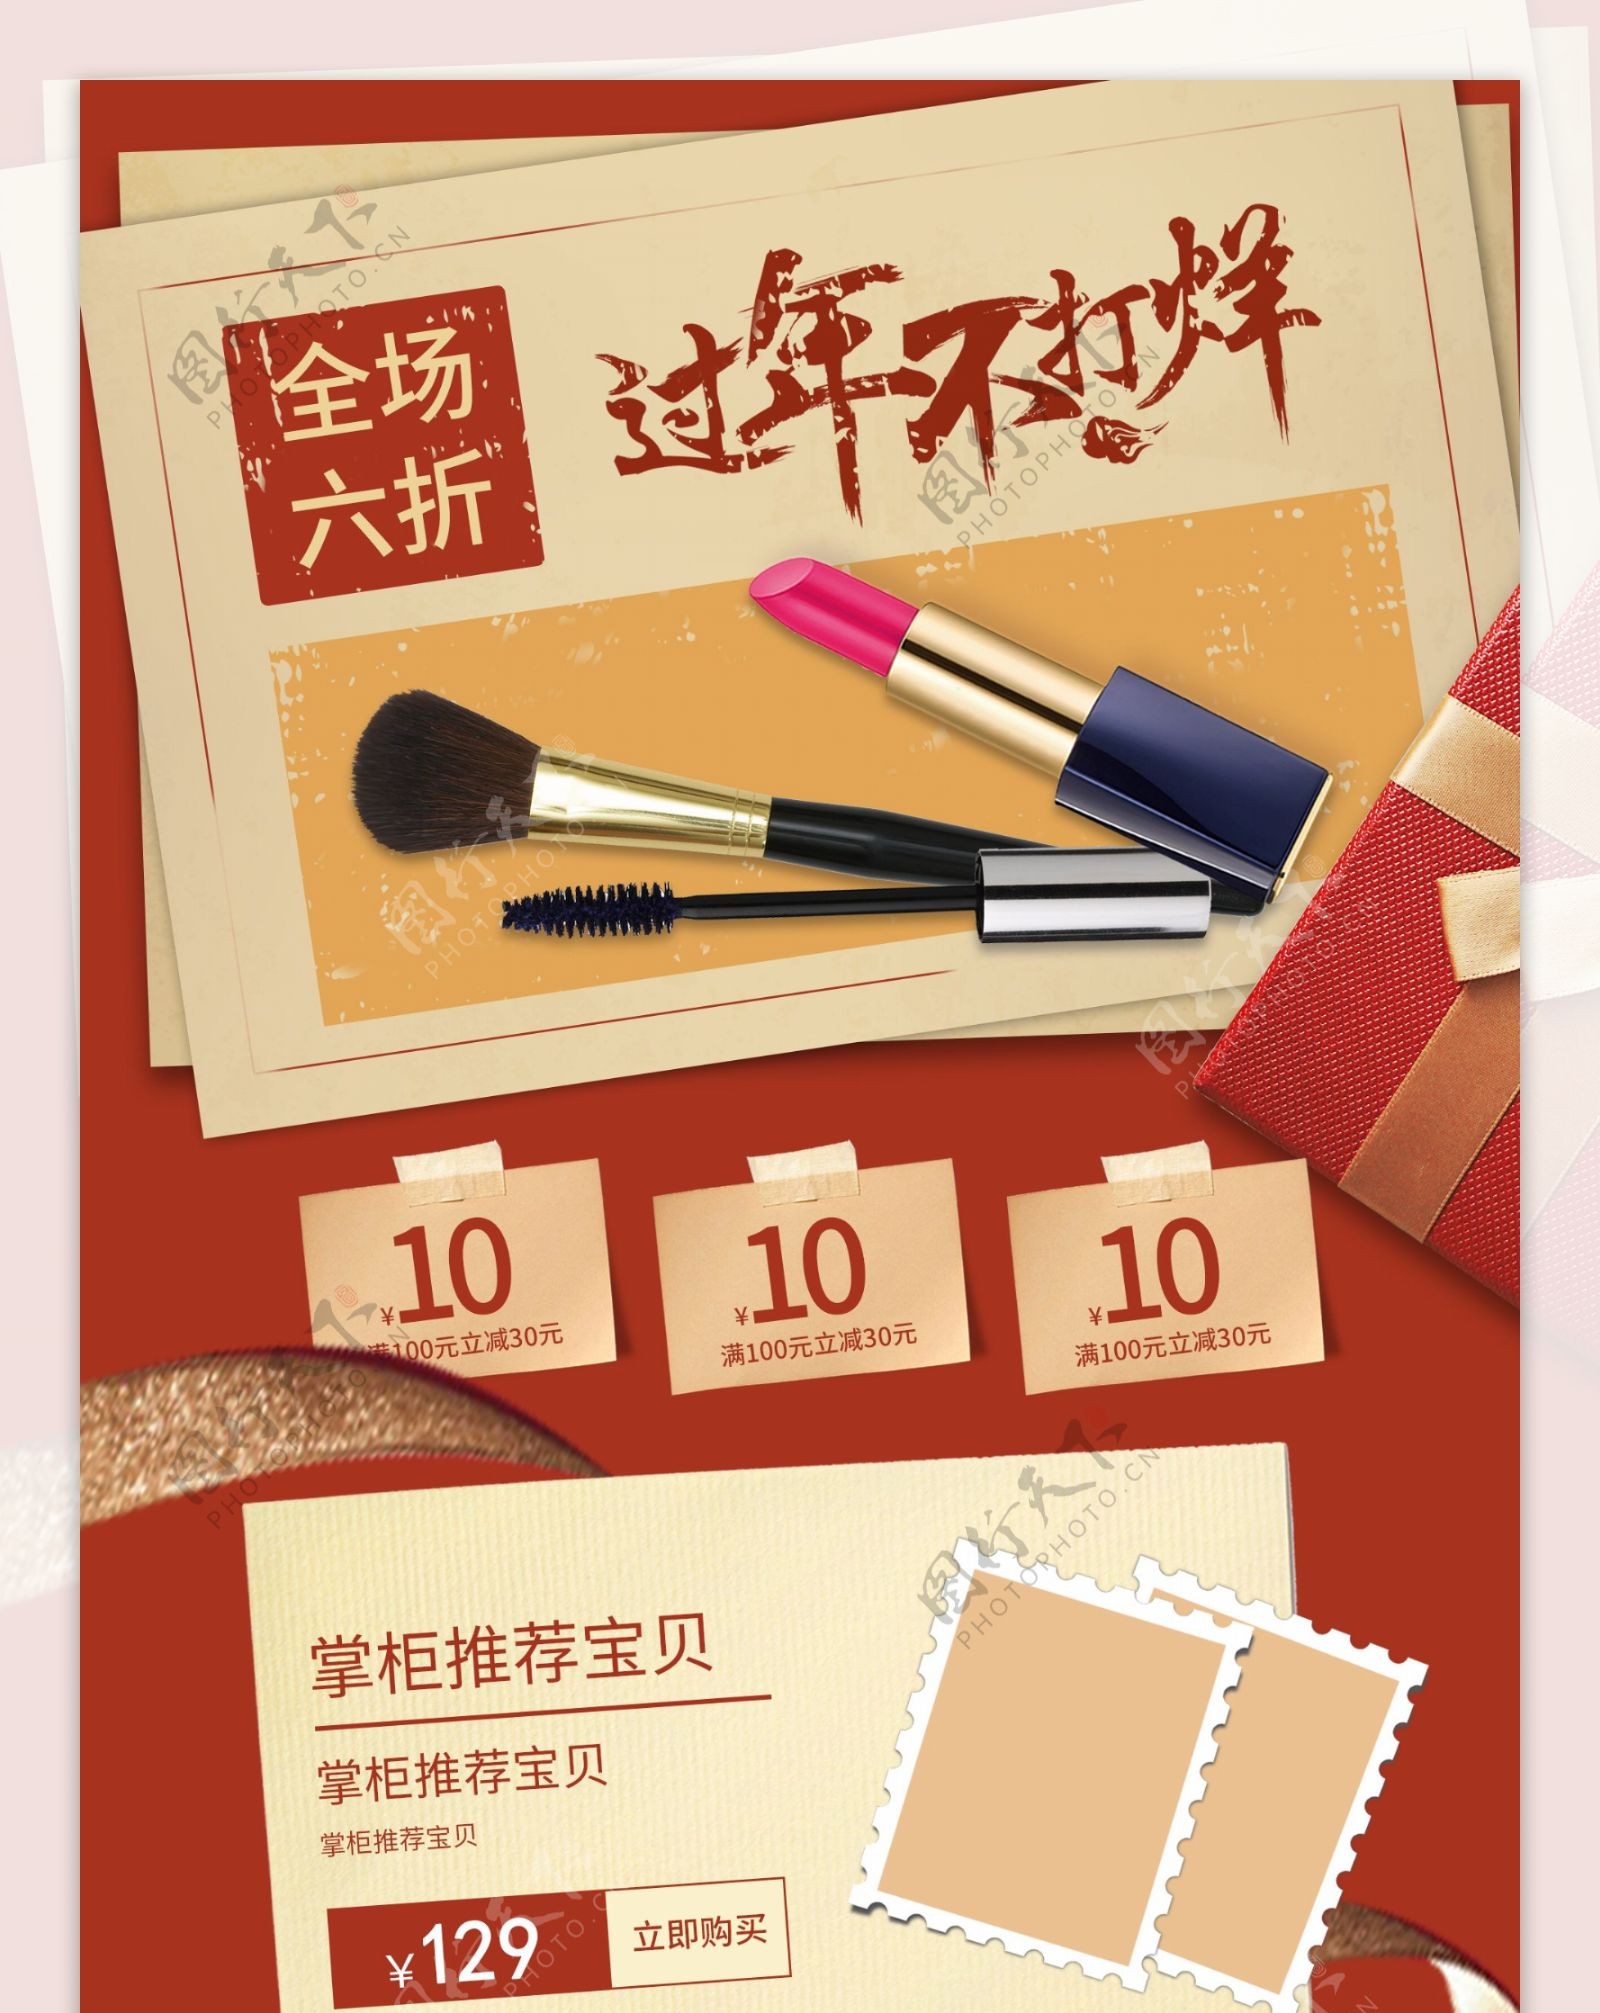 电商新年促销活动美妆报纸风格首页模板